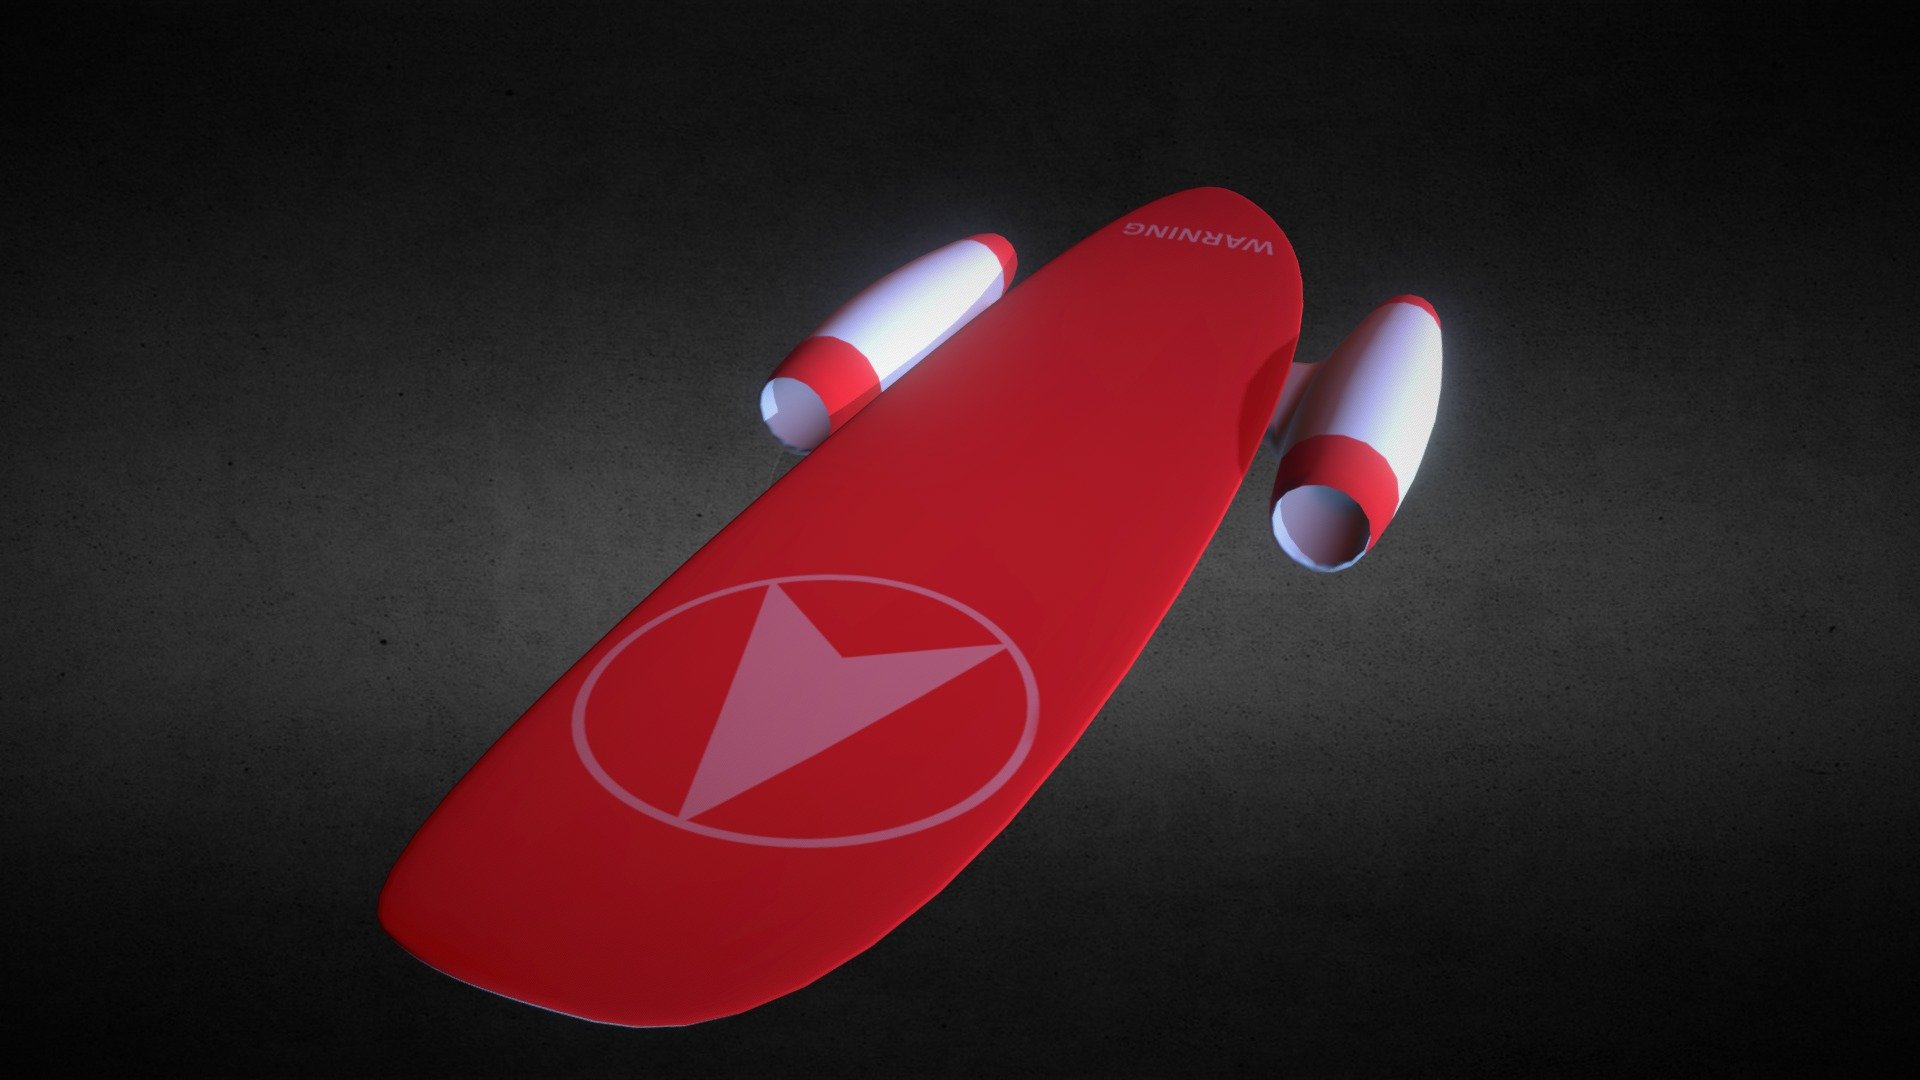 Rocket power skateboard. Teenagers dream :) - Sci-Fi Skateboard - 3D model by gooofartist 3d model